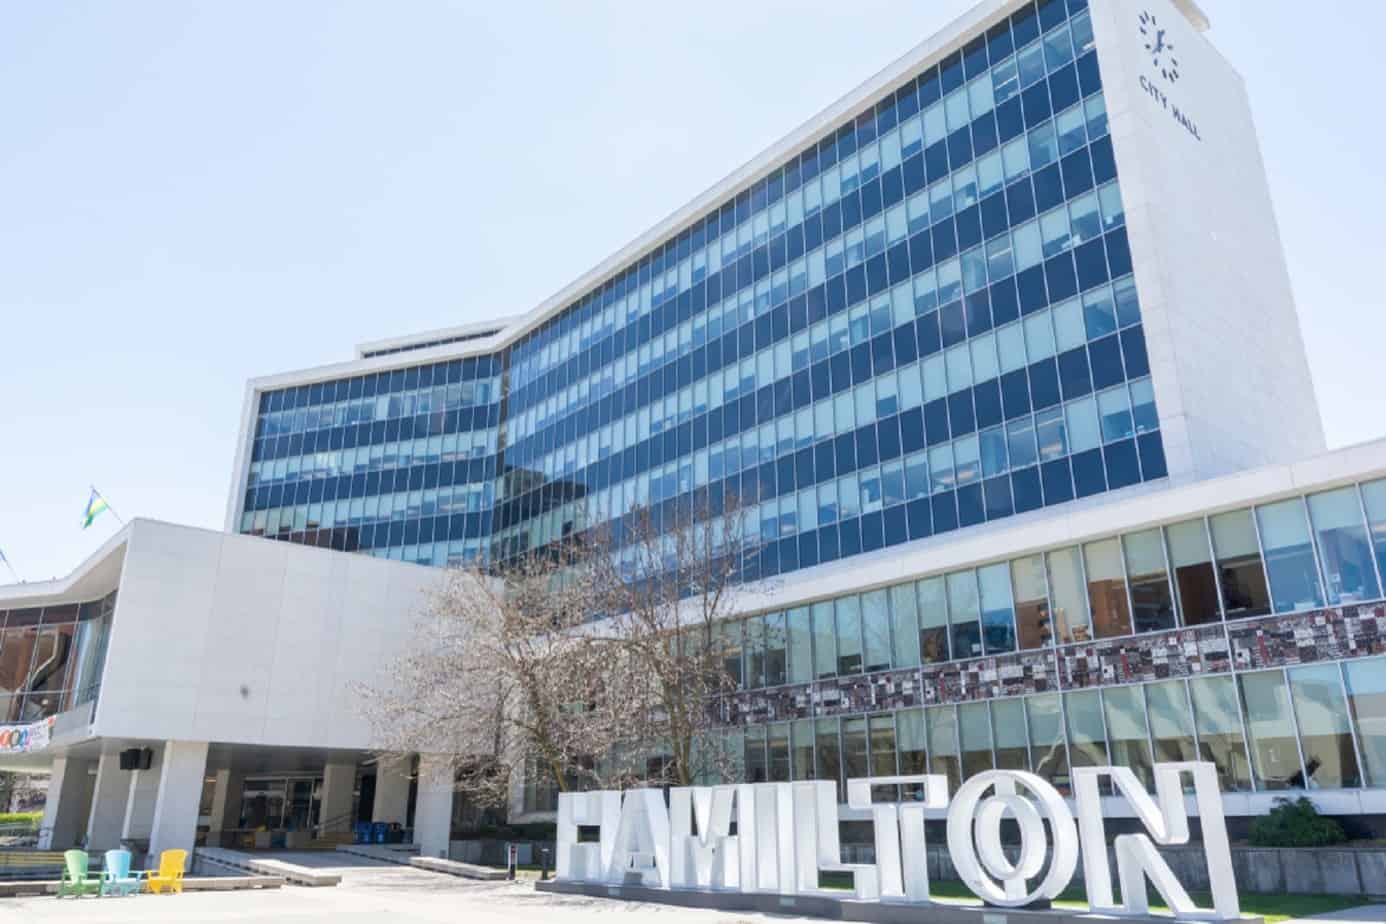 Hamilton Institute for Health Personnel